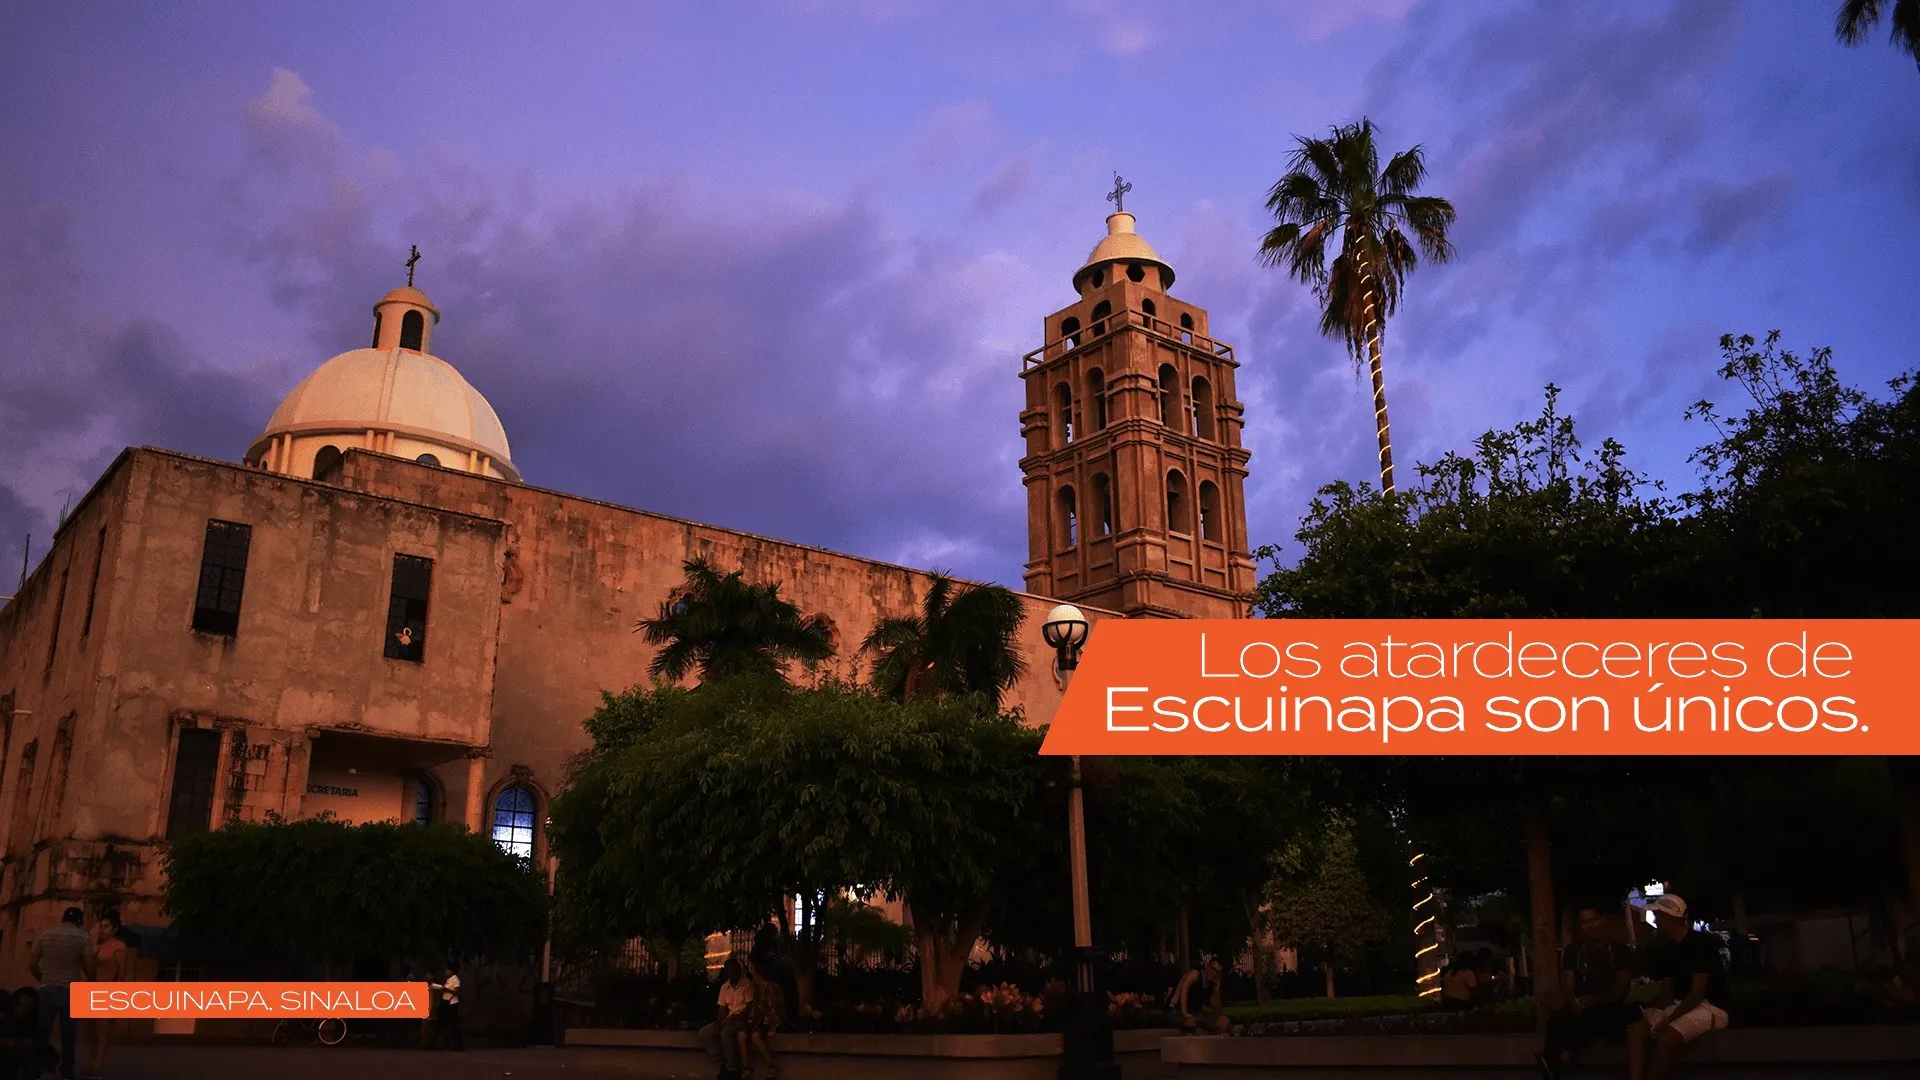 Escuinapa Sinaloa